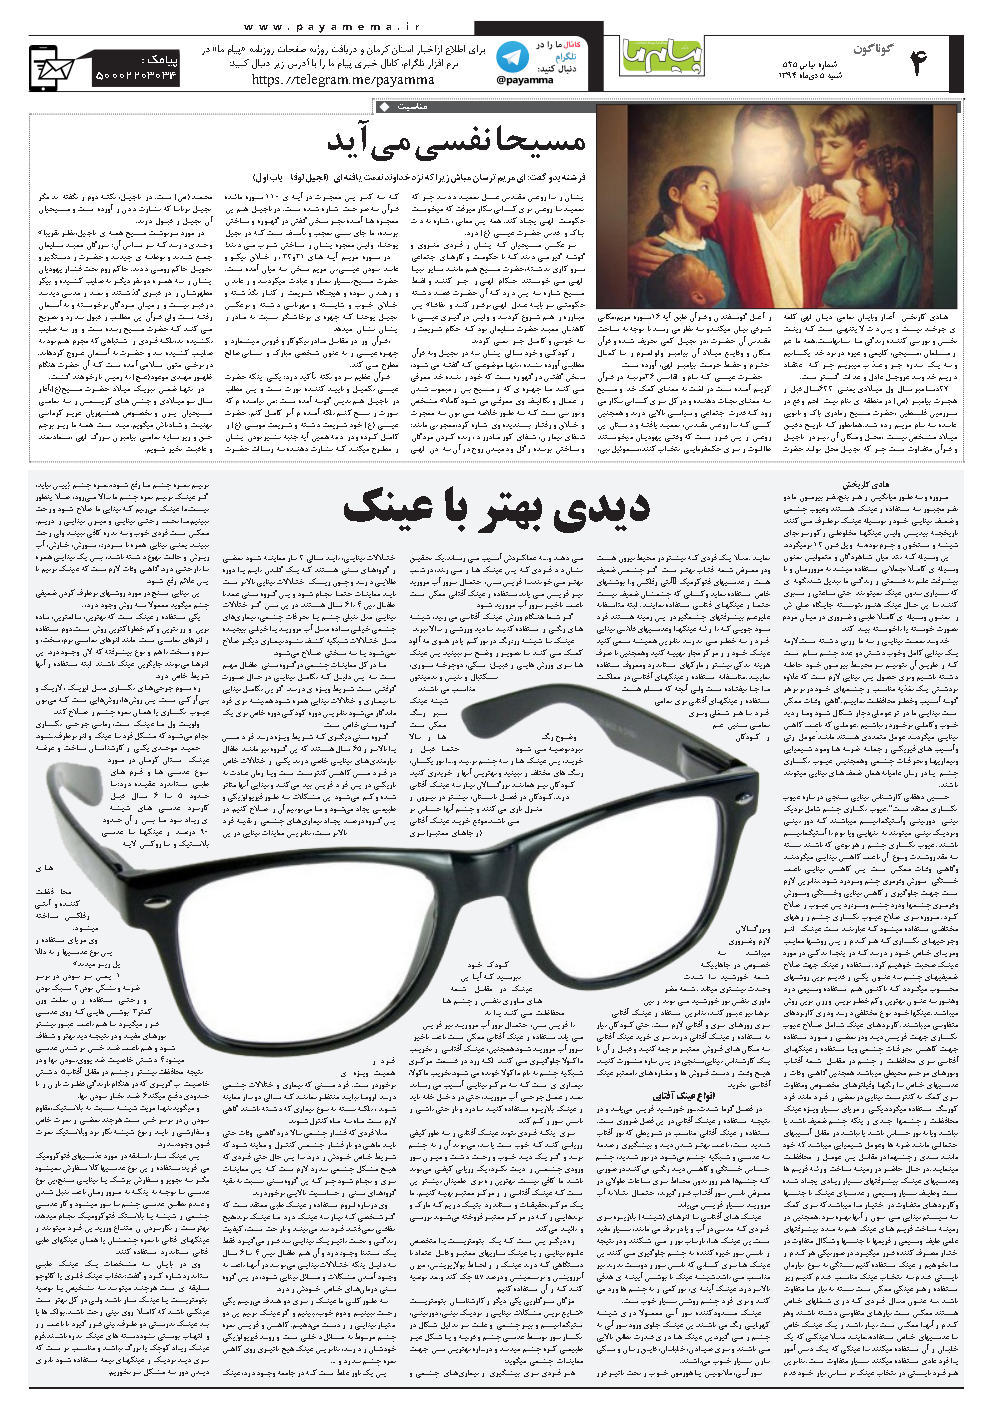 صفحه گوناگون شماره 525 روزنامه پیام ما